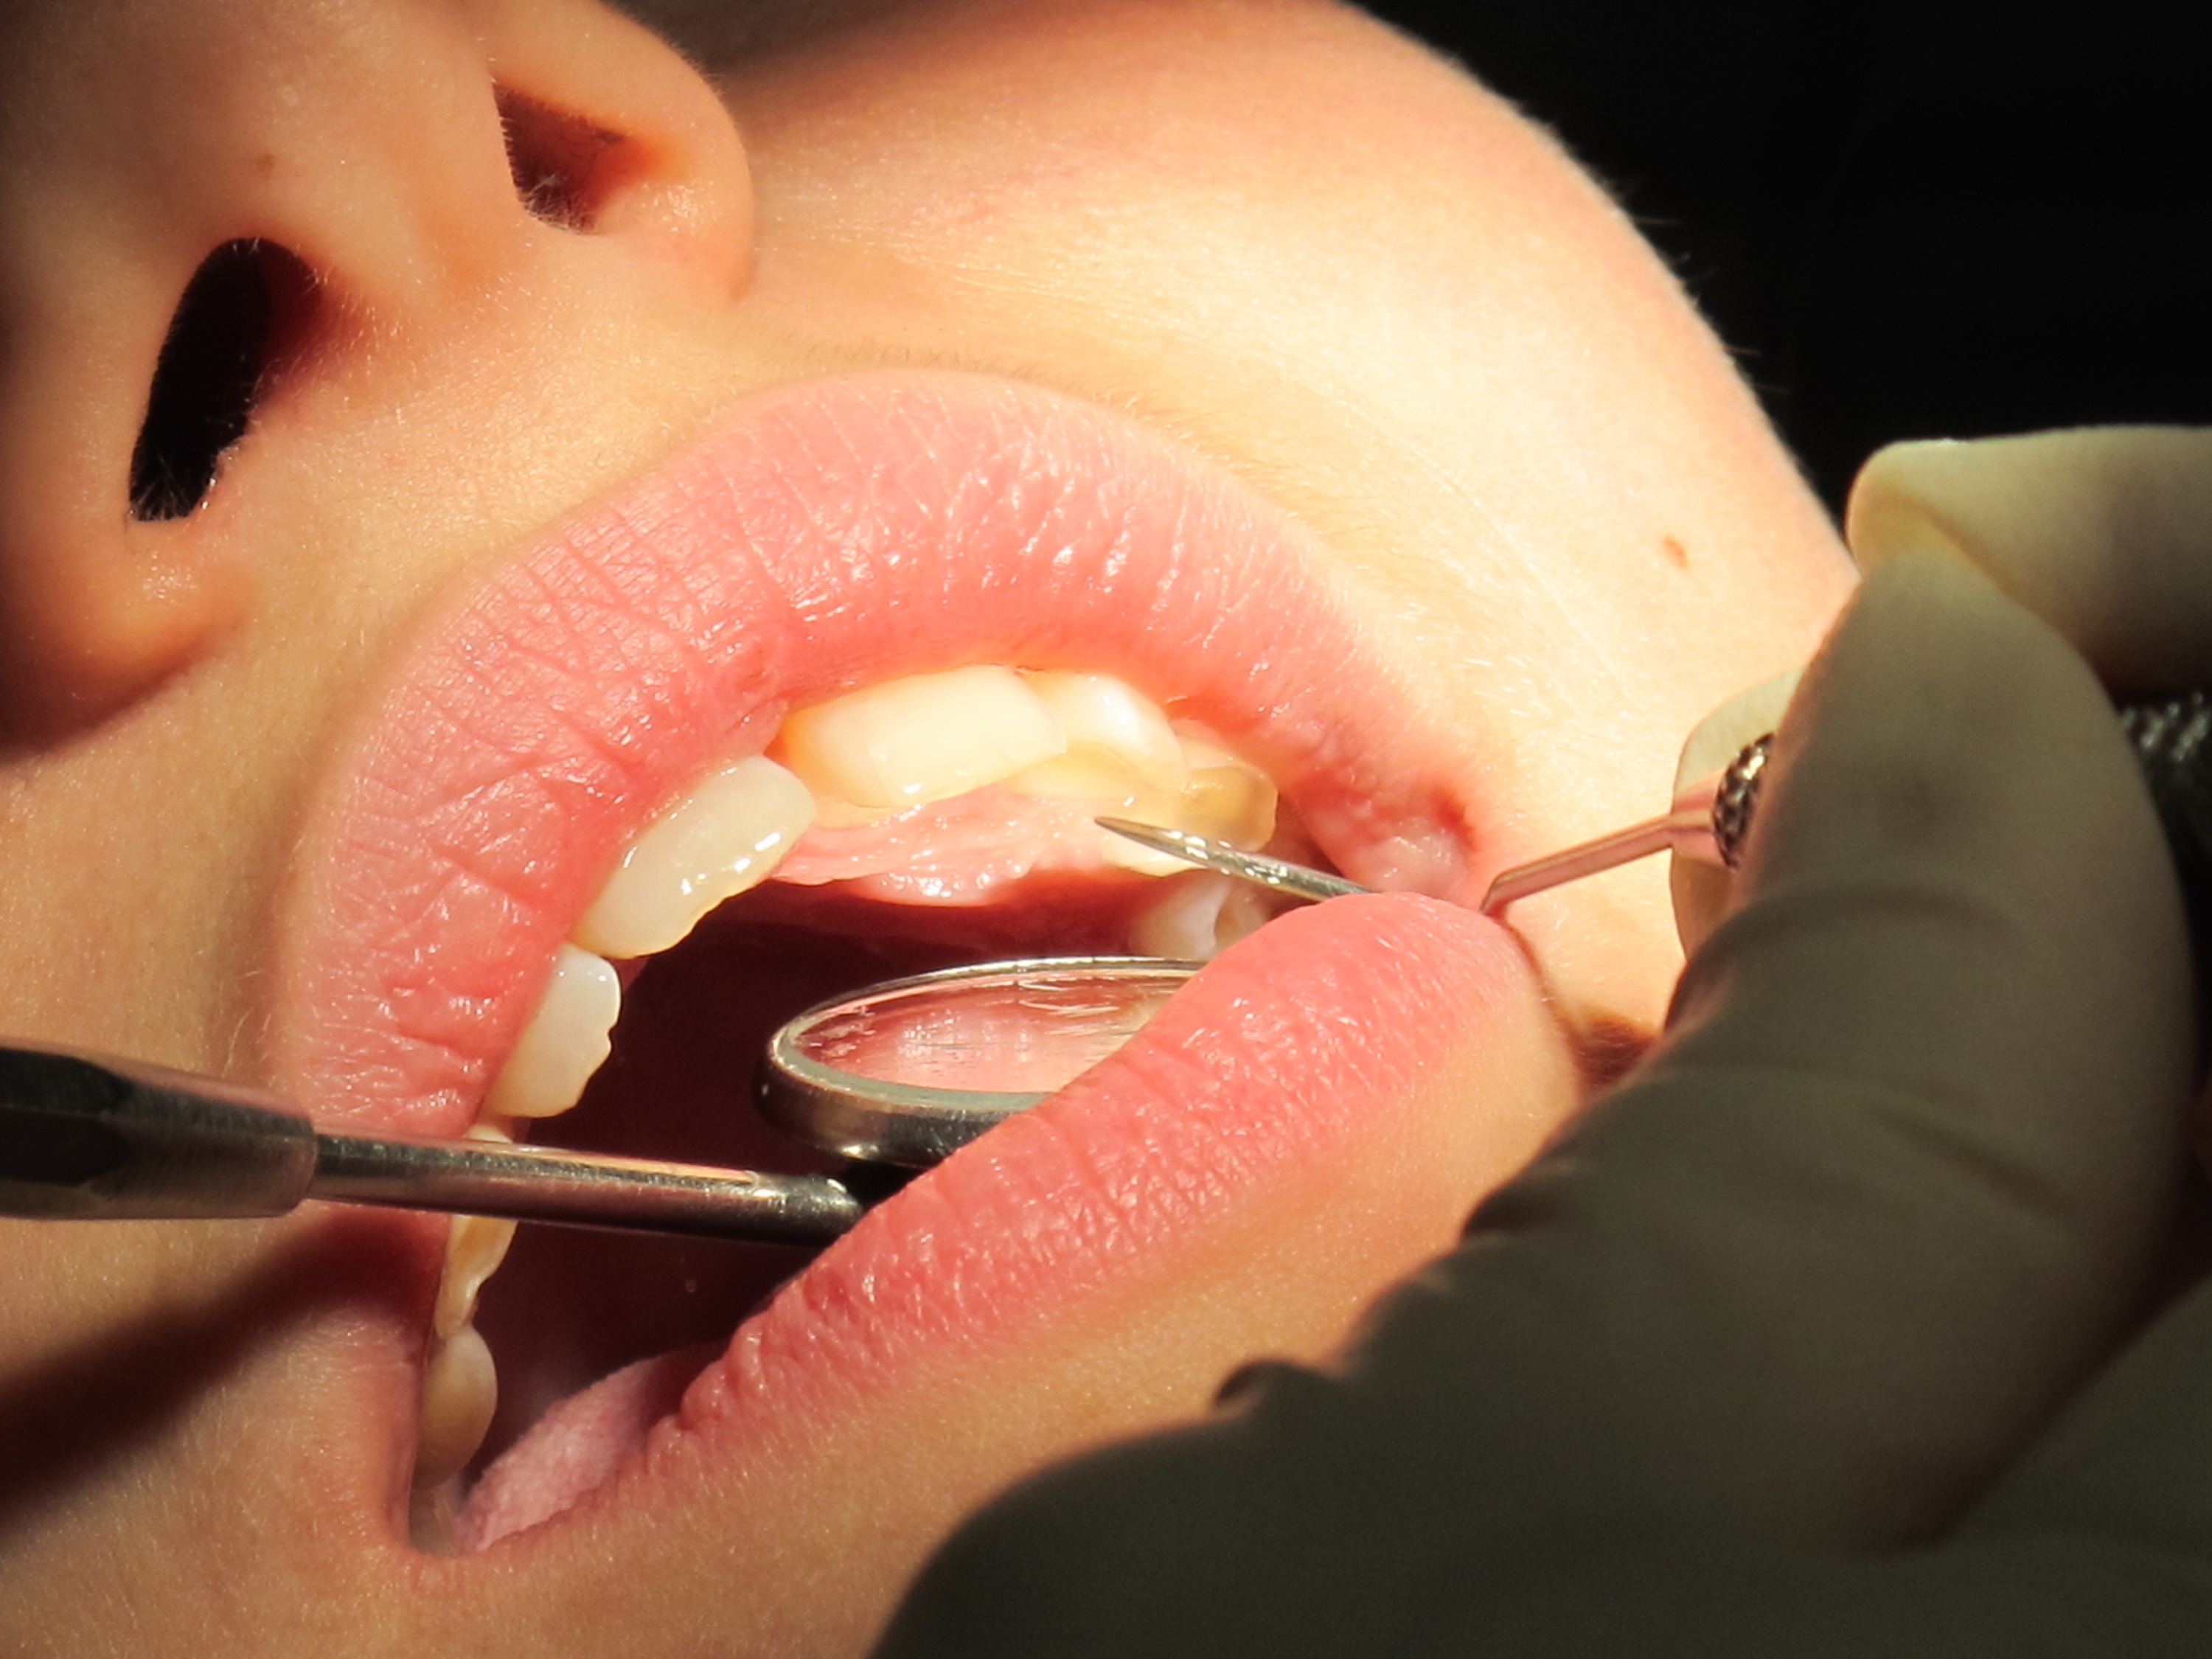 Dentiste Enlever Les Bandes De Caoutchouc Des Accolades Du Patient. Photo  stock - Image du bouche, dentaire: 229553298